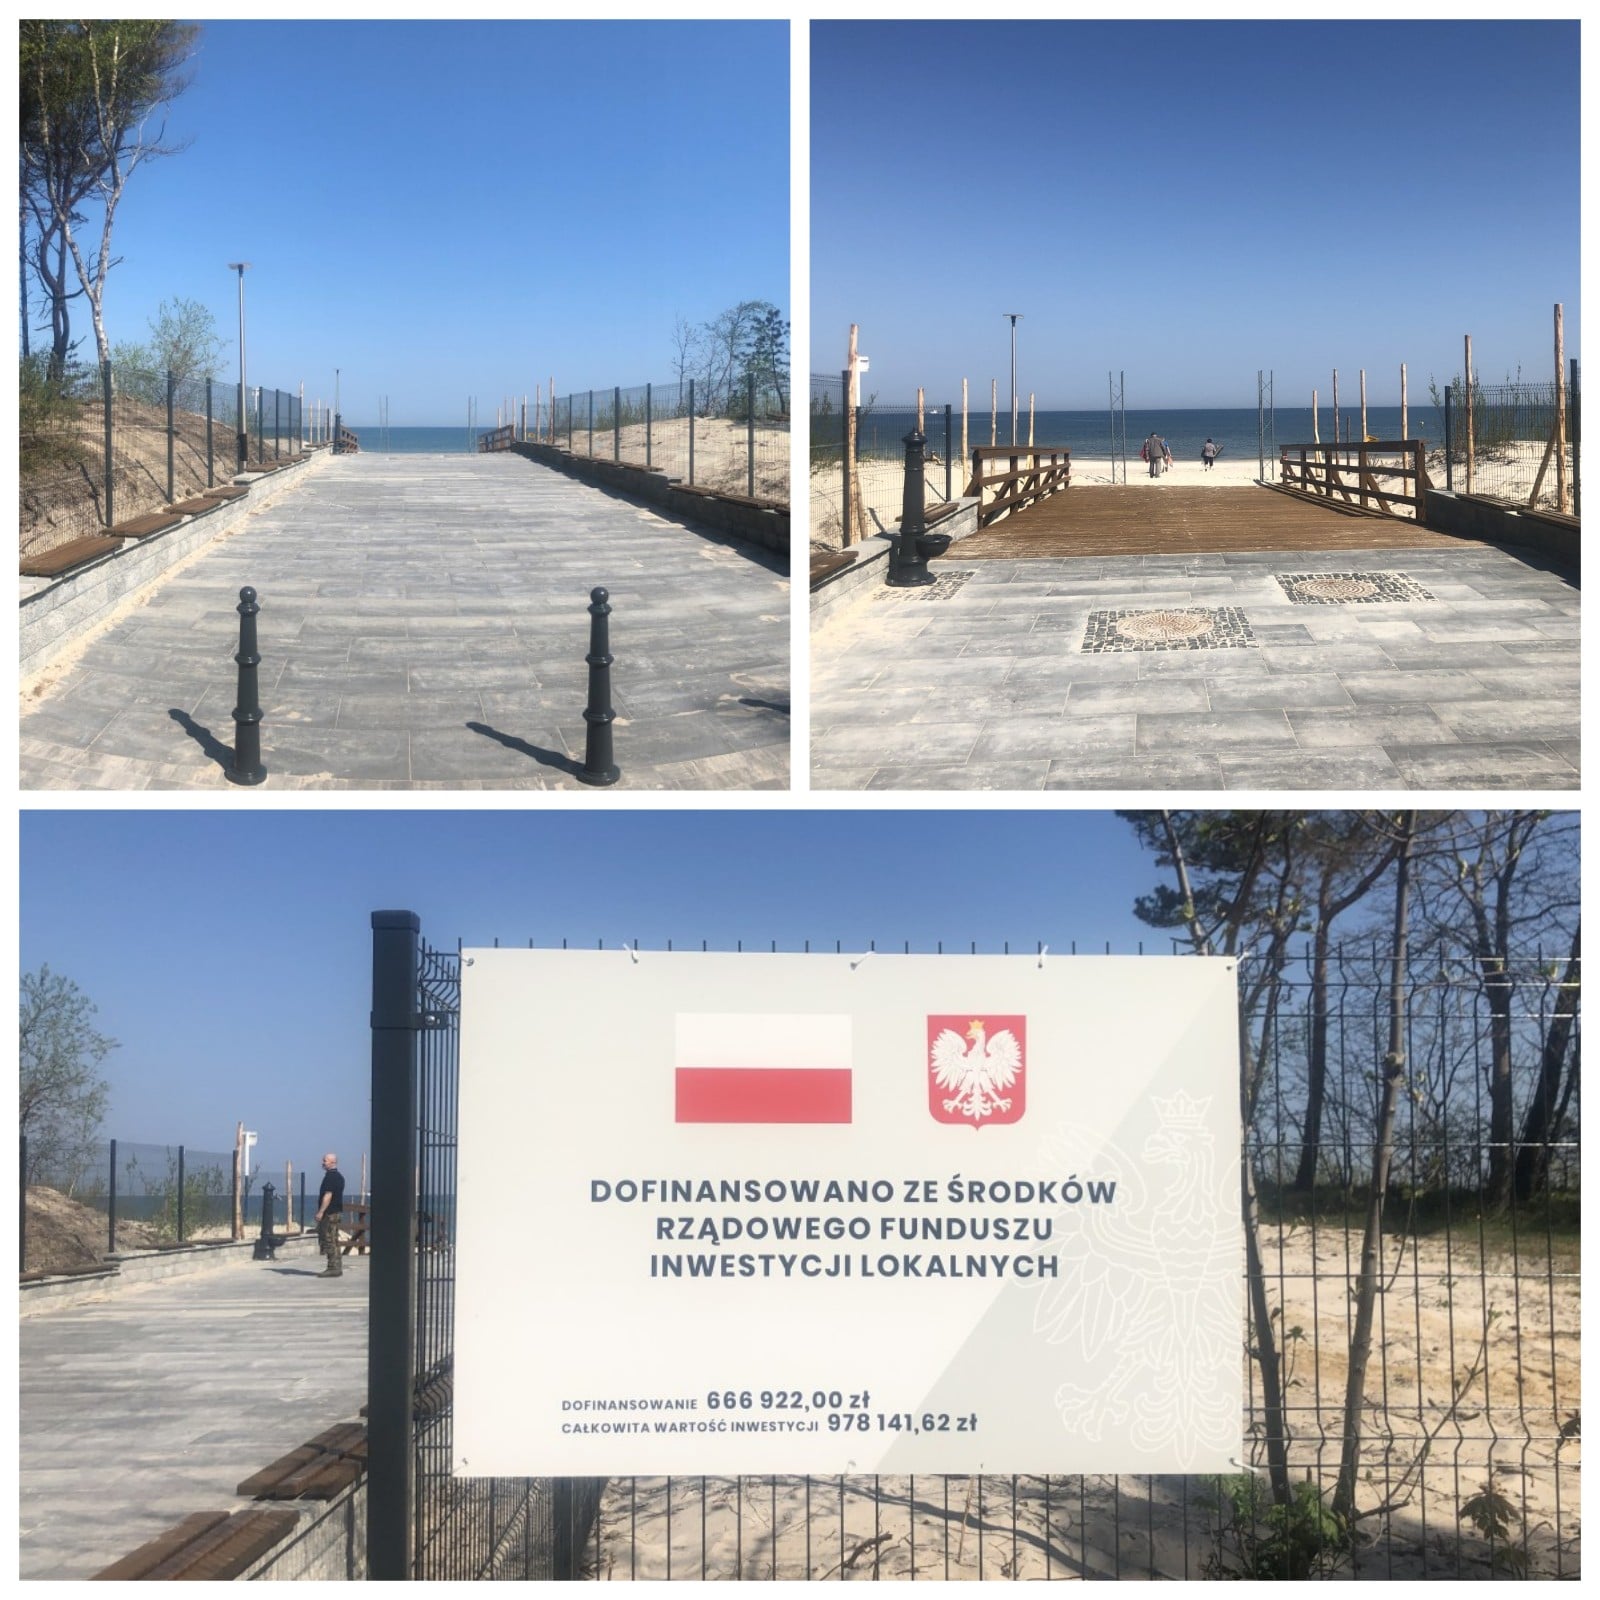 Miasto Łeba ukończyła projekt przebudowy zejścia i dojścia do zejścia na plażę nr 3 w Łebie. Udało się to dzięki wsparciu uzyskanemu z Rządowego Funduszu Inwestycji Lokalnych. Dofinansowanie otrzymane z #RFIL to ponad 660 tys. zł.